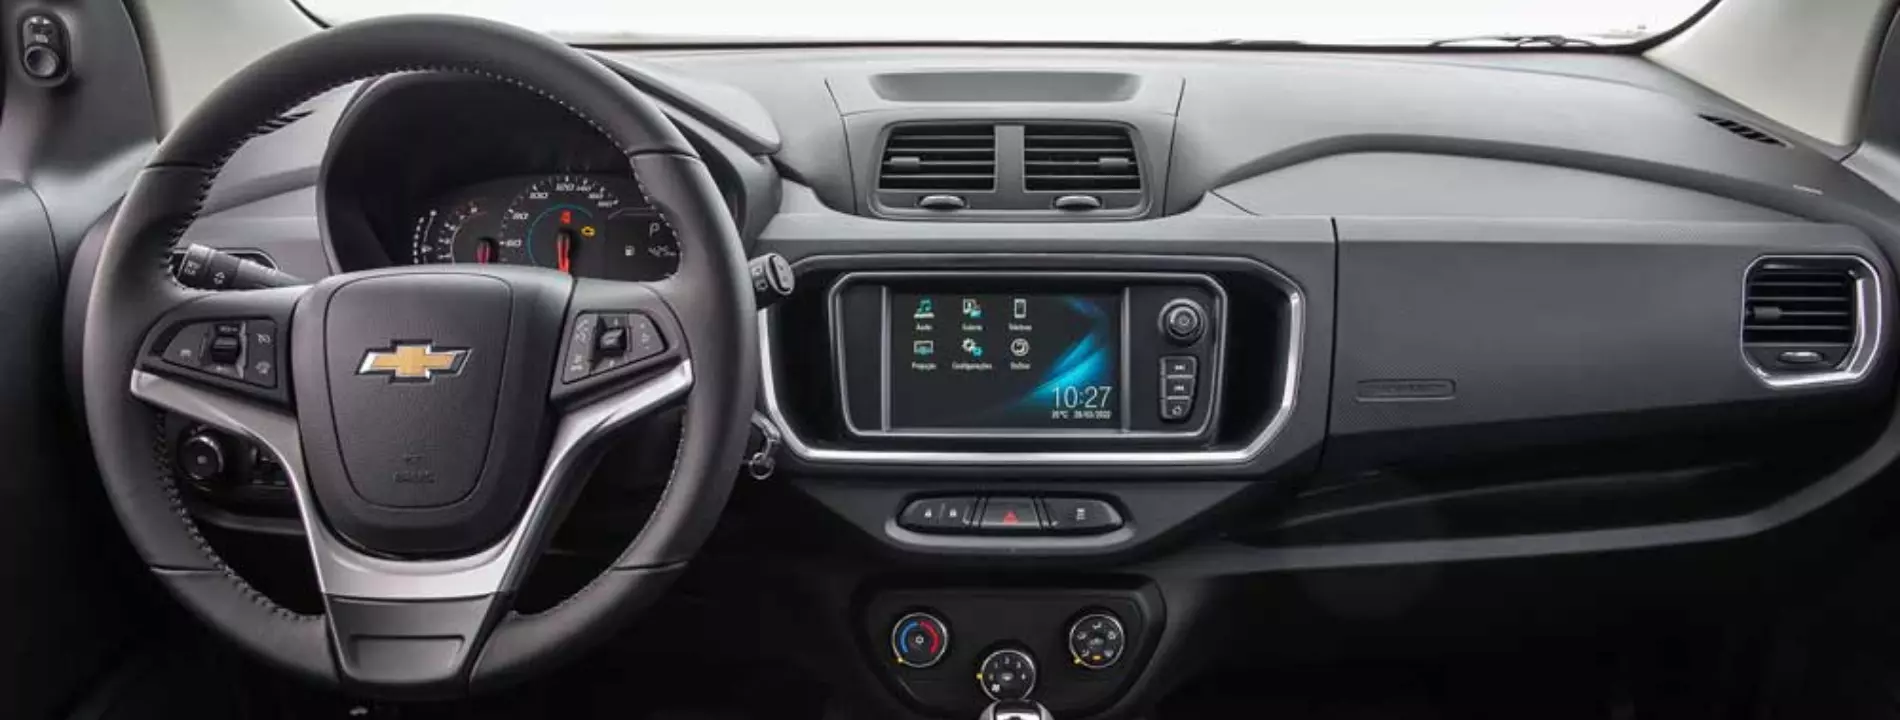 Tecnologia do novo Chevrolet Spin 2023